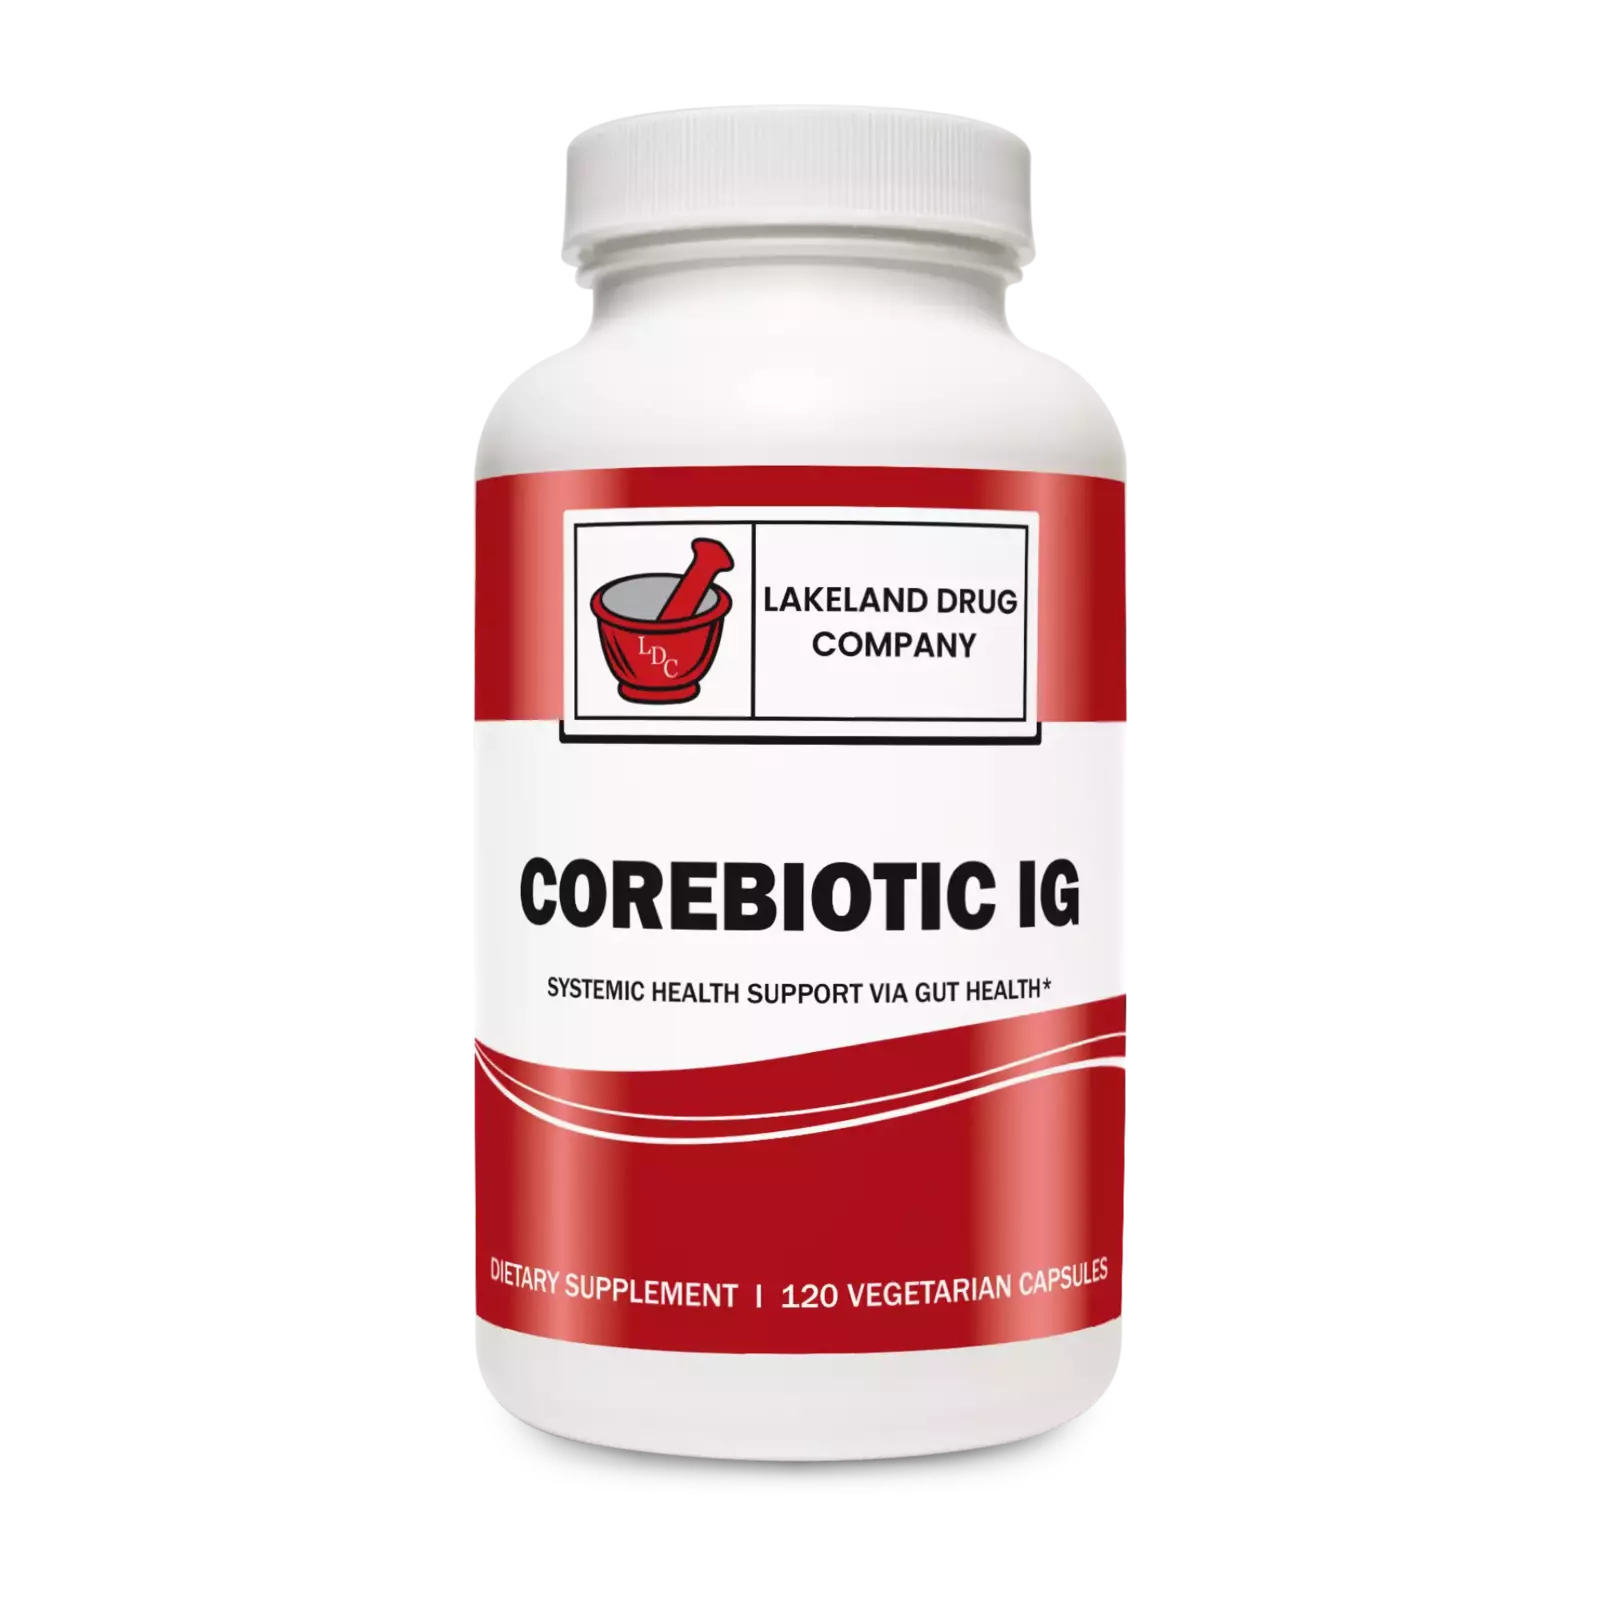 CoreBiotic IG